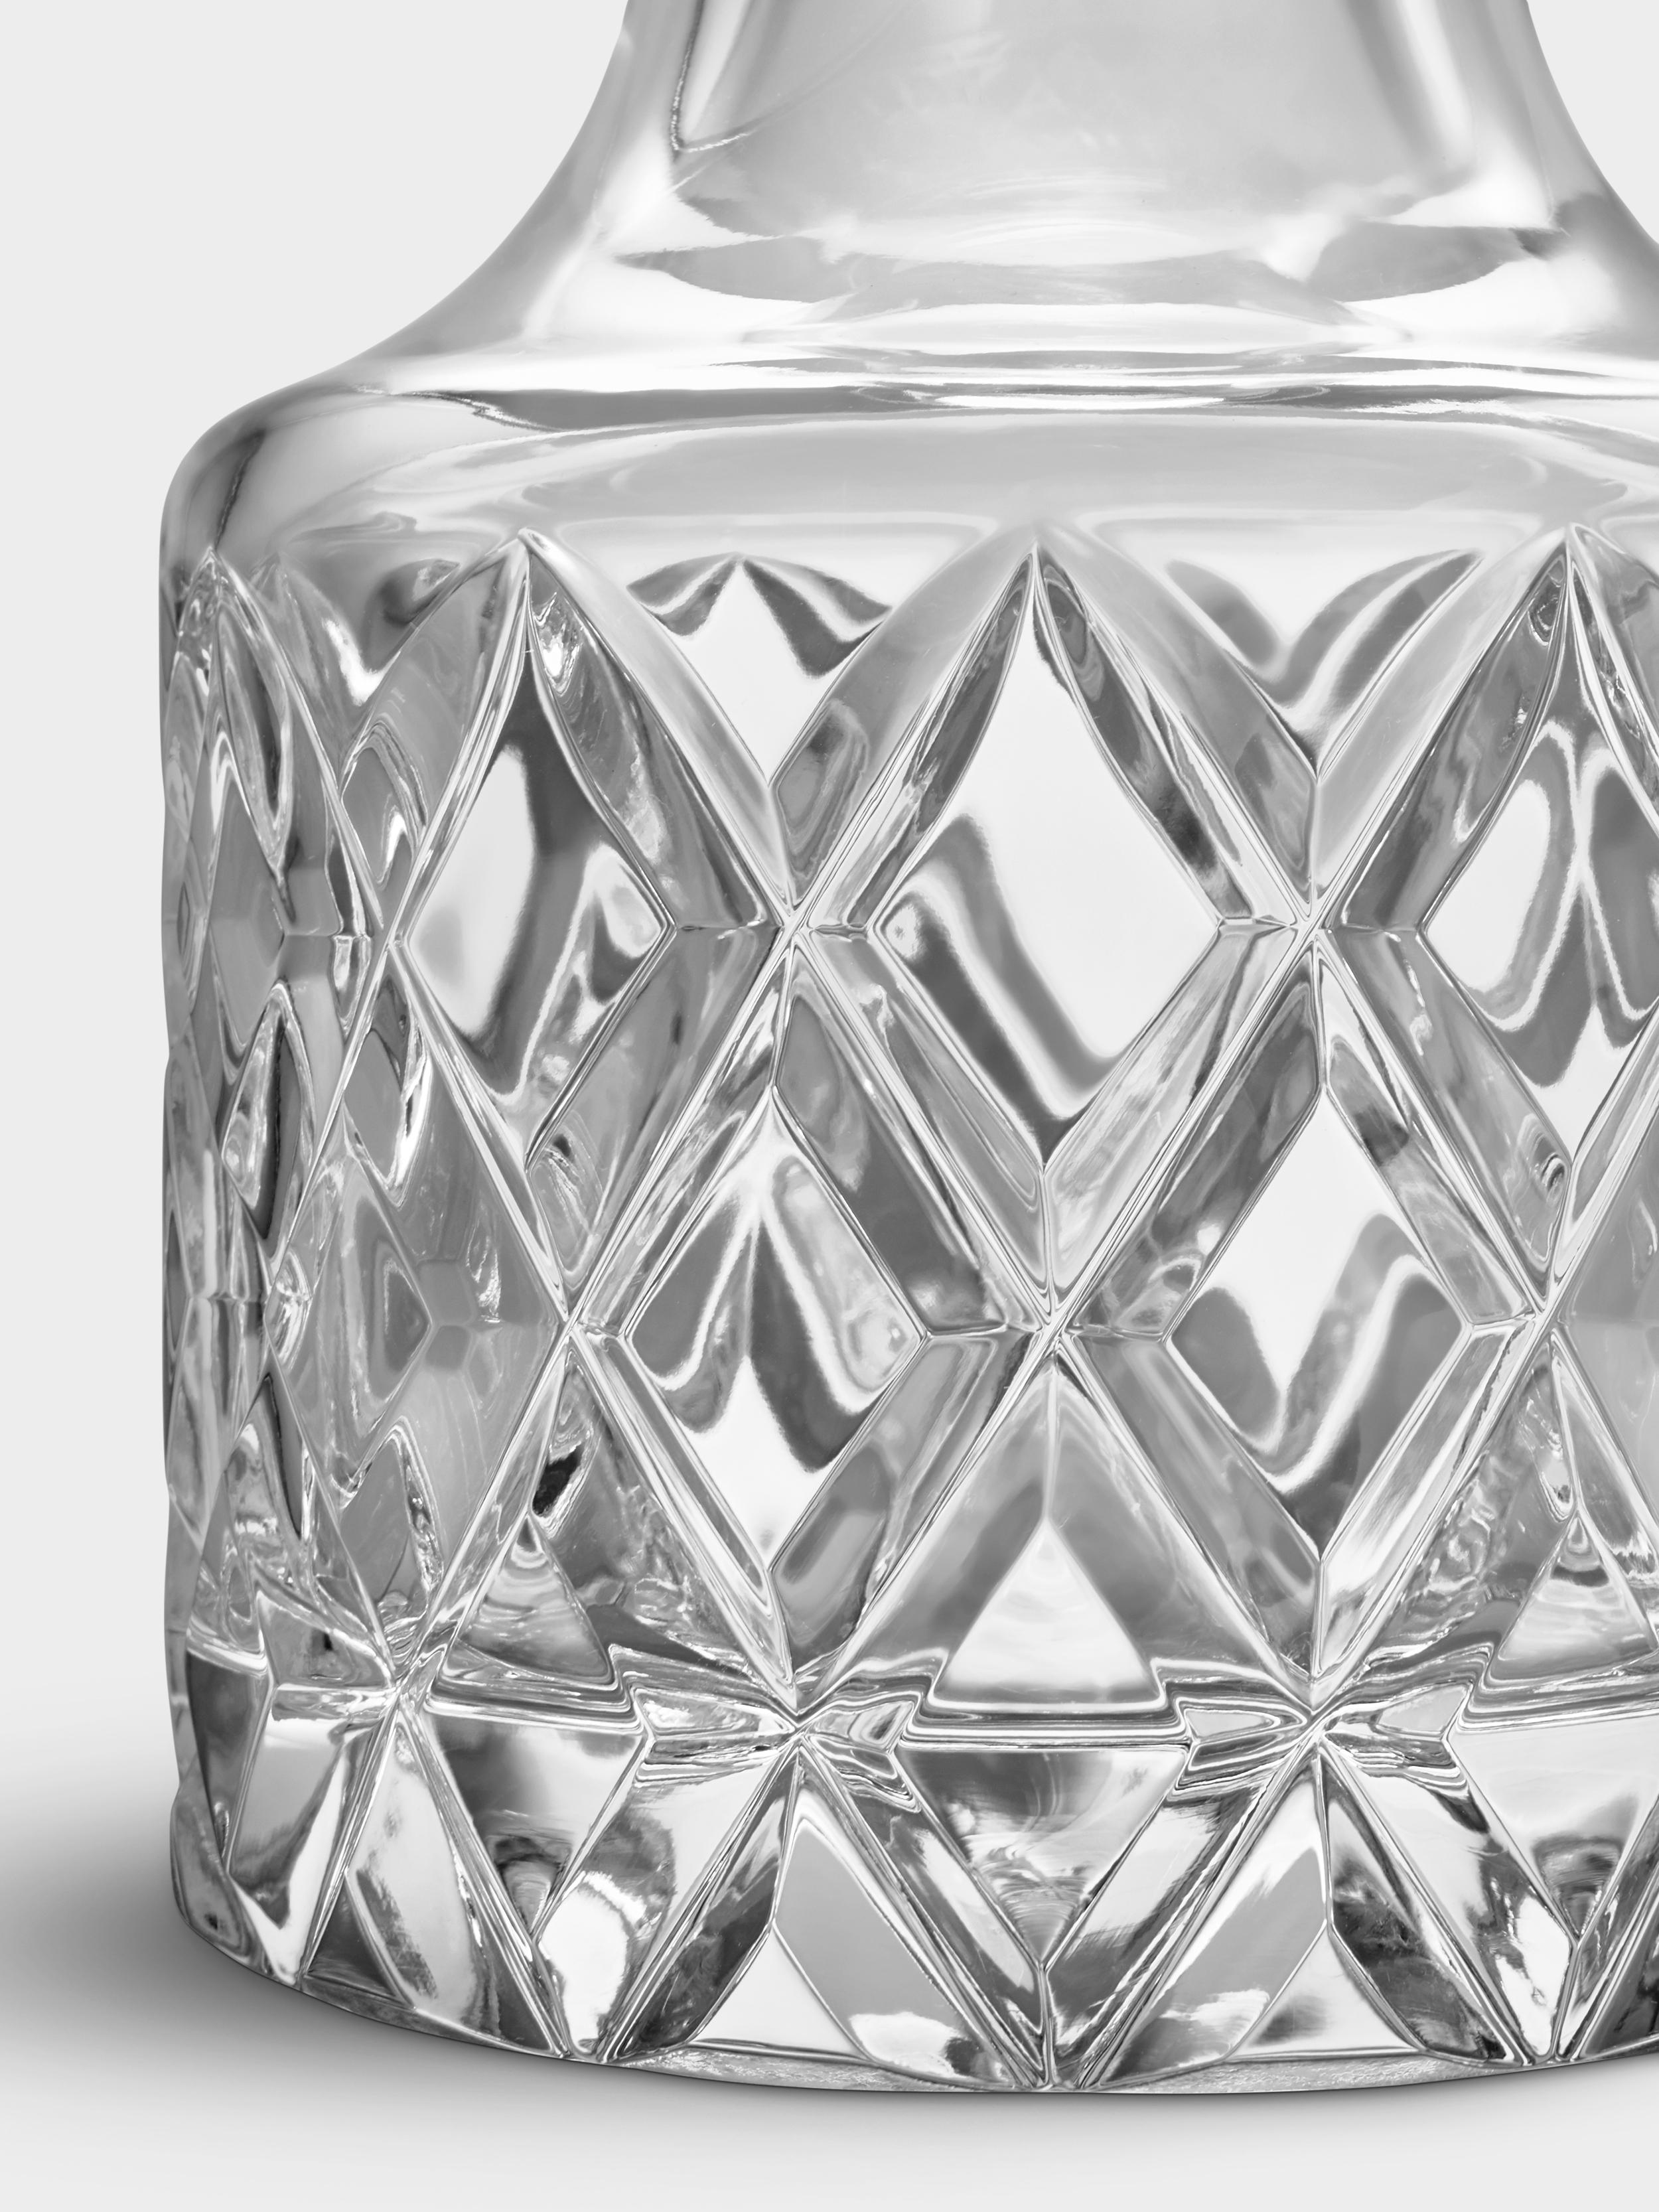 La carafe de la collection Sofiero d'Orrefors, conçue par Gunnar Cyrén en 1960, est un classique scandinave intemporel. Il présente un motif taillé en profondeur, qui réfracte magnifiquement la lumière dans le cristal épais. La carafe Sofiero, d'une